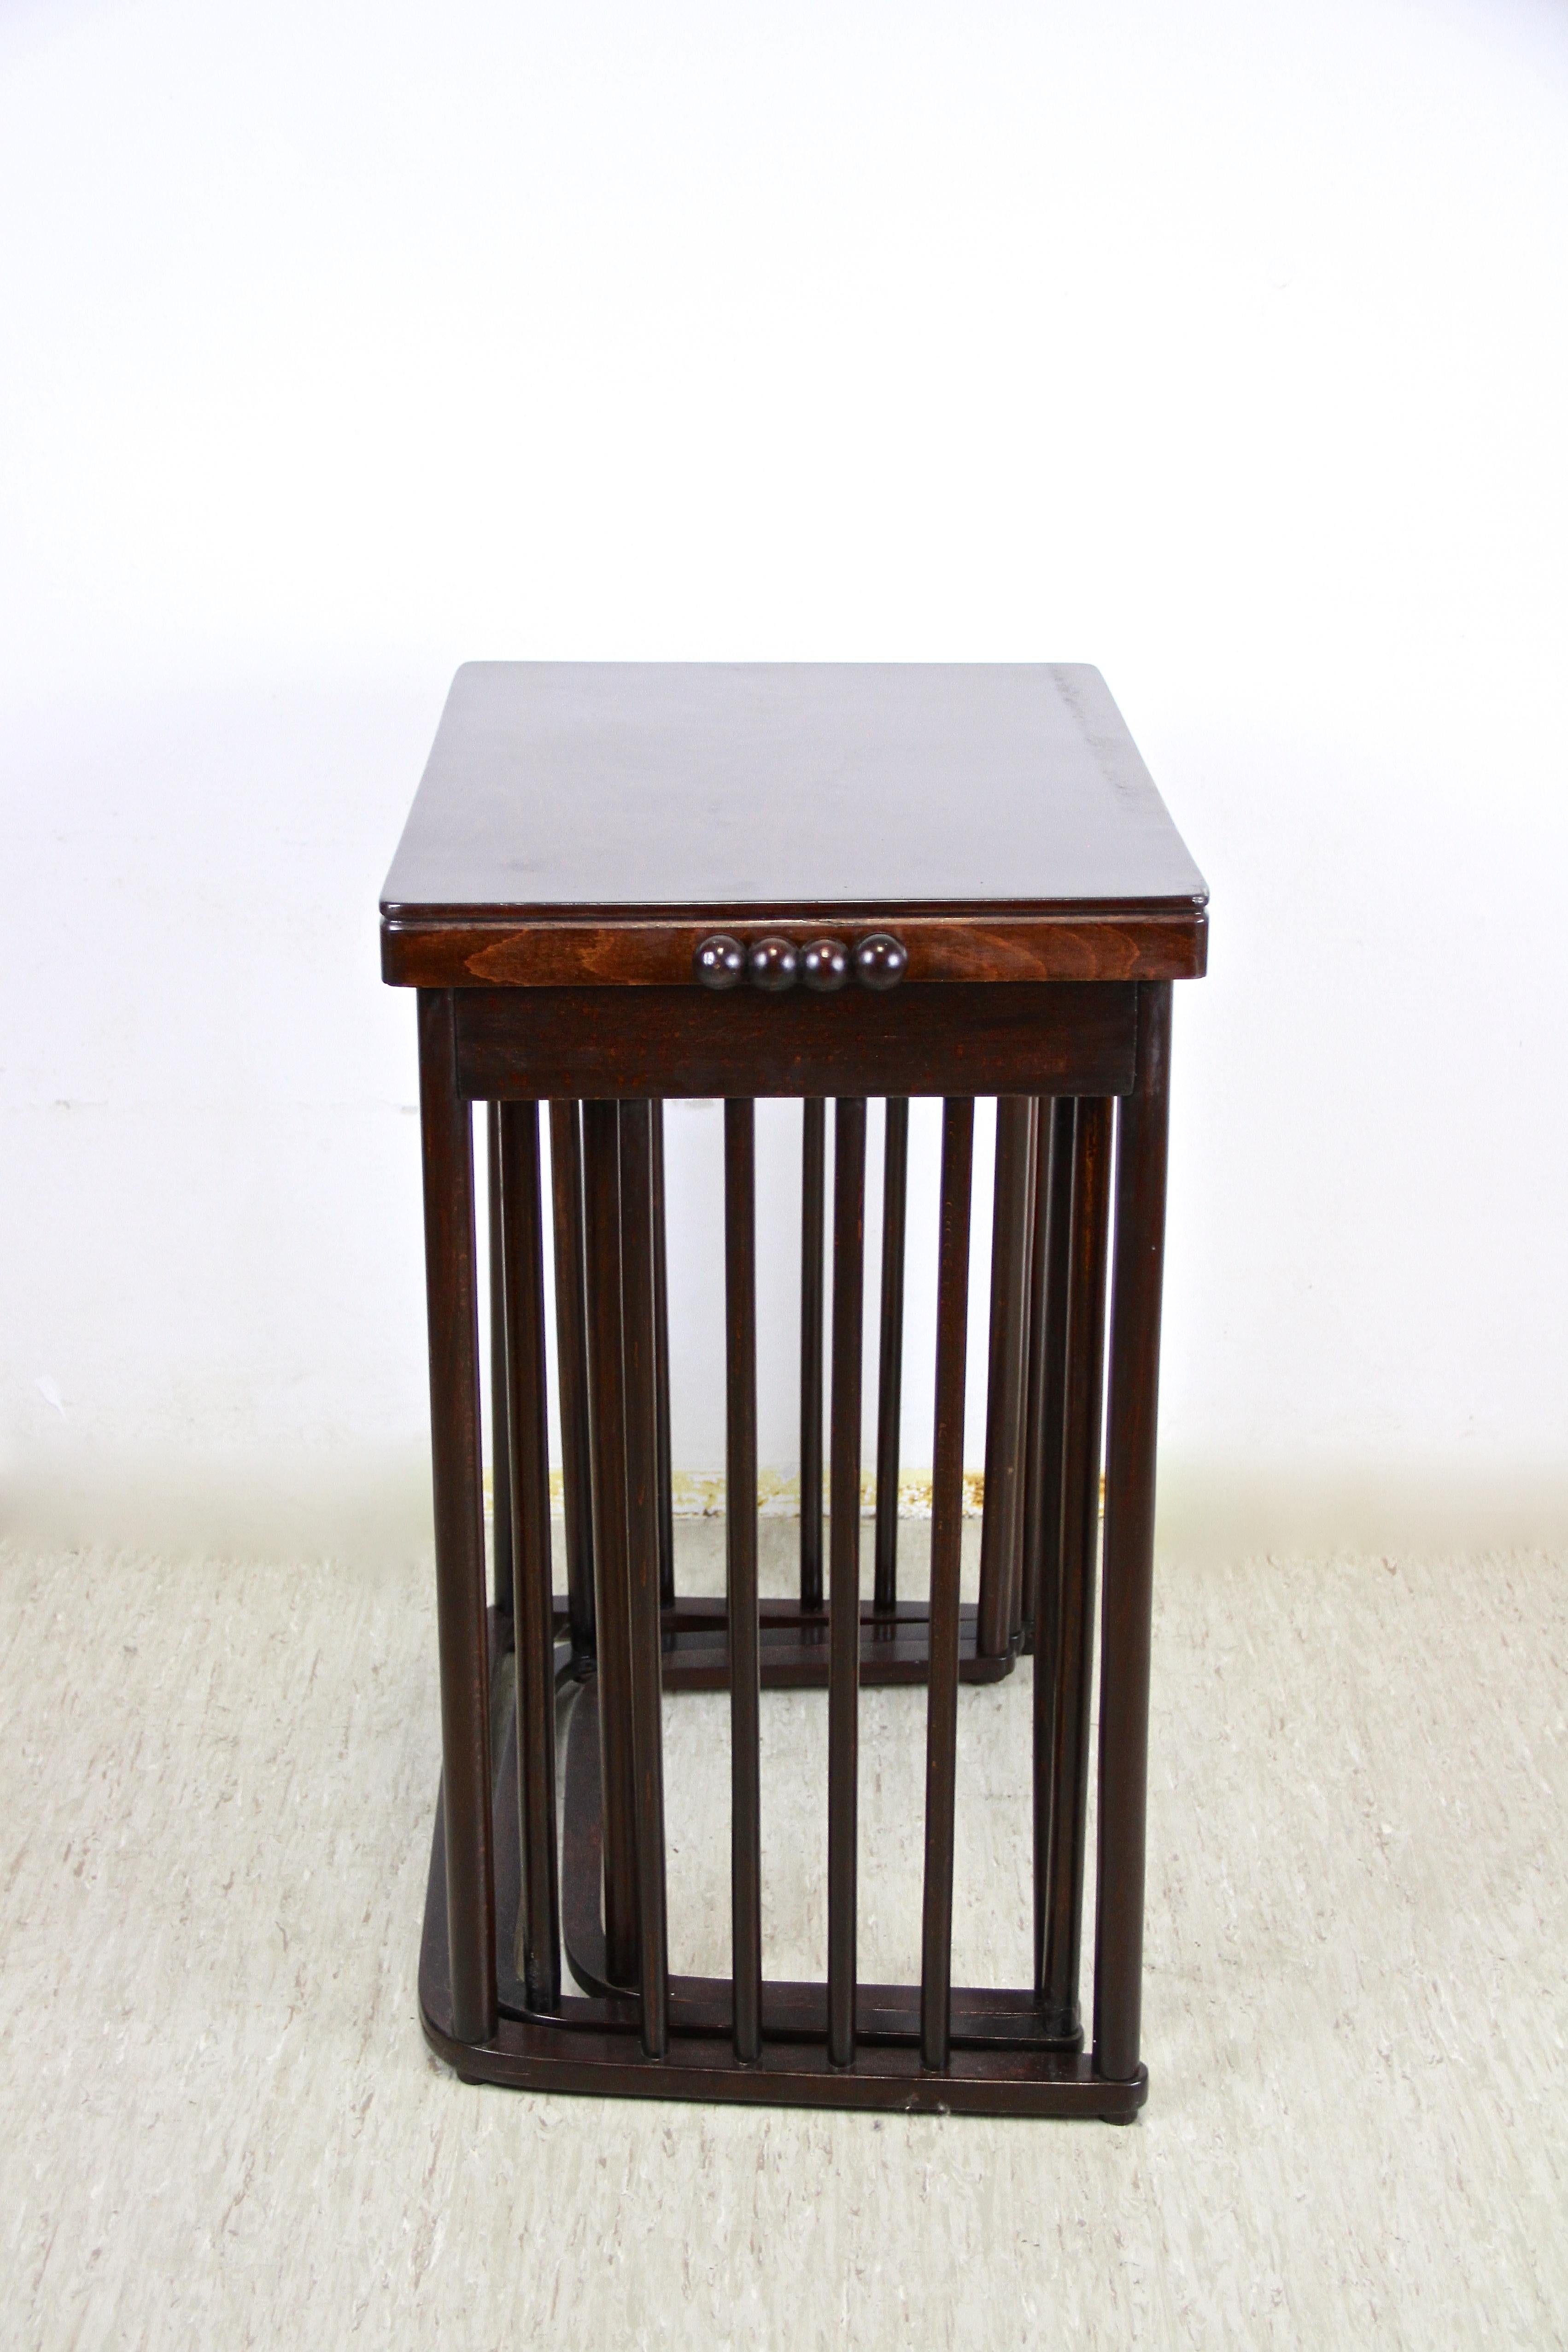 Beech Josef Hoffmann Bentwood Nesting Table Mod. 986 by J & J Kohn, Austria, 1905